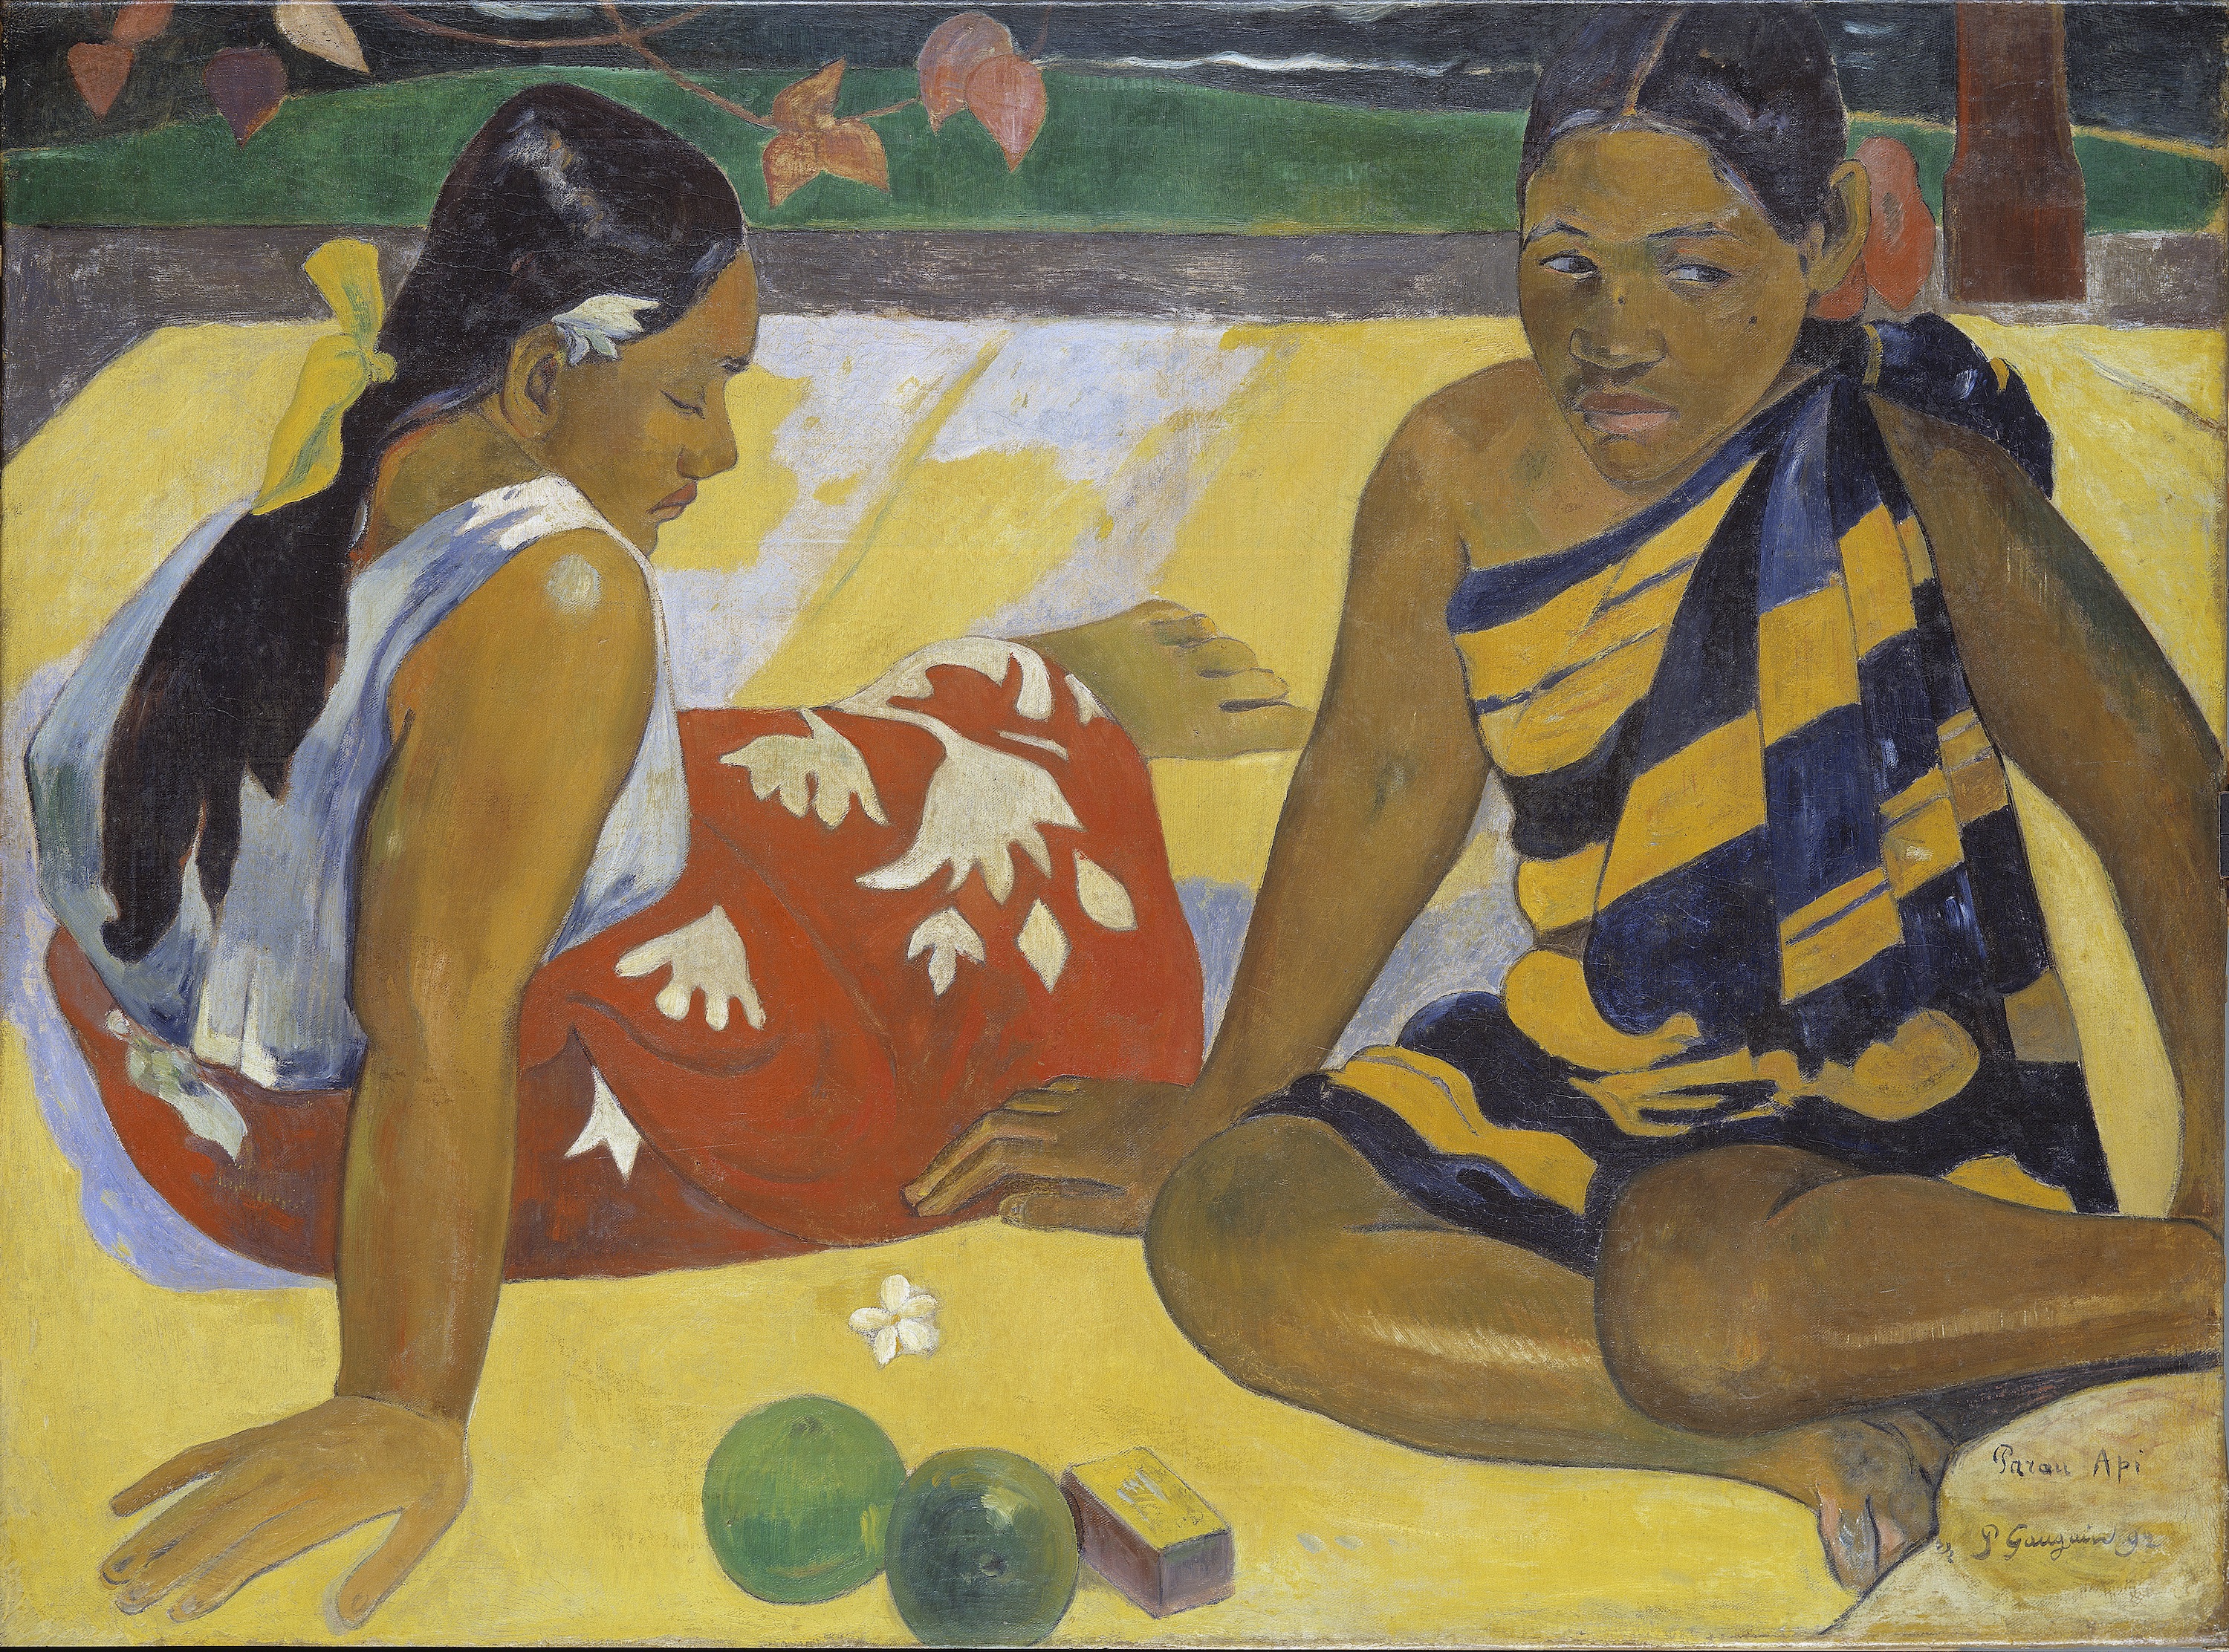 परउ अपि. व्हॉट न्यूज़ by Paul Gauguin - १८९२ ई. - ९२ x ६७ से.मी. 